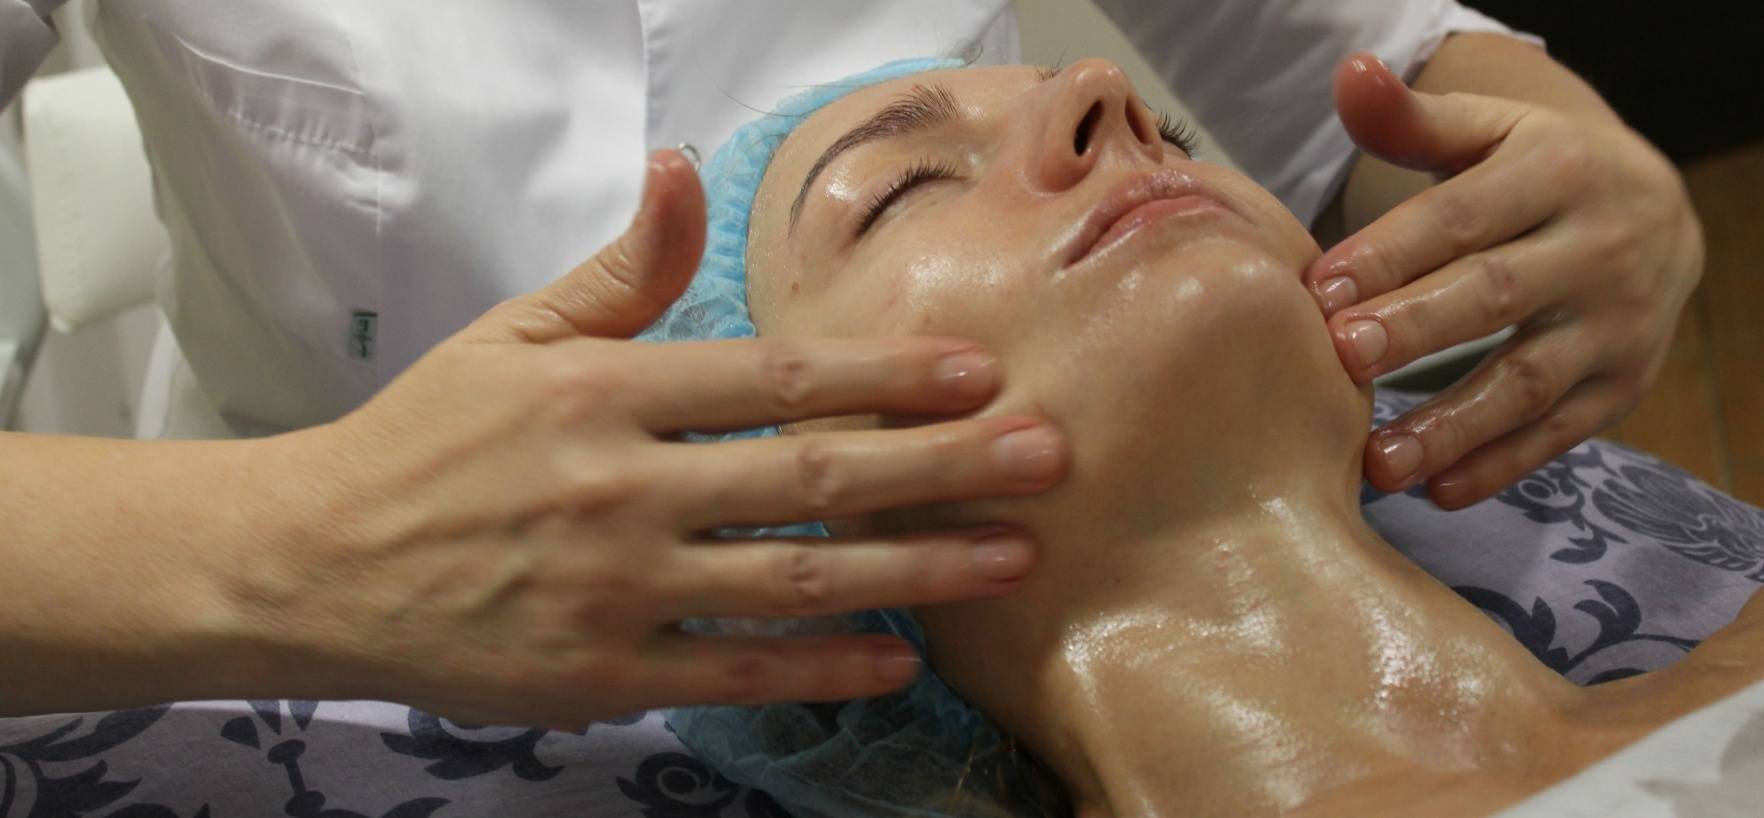 Моделирующий массаж лица: отзывы, фото до и после, пошаговая инструкция, эффект от мануальной терапии